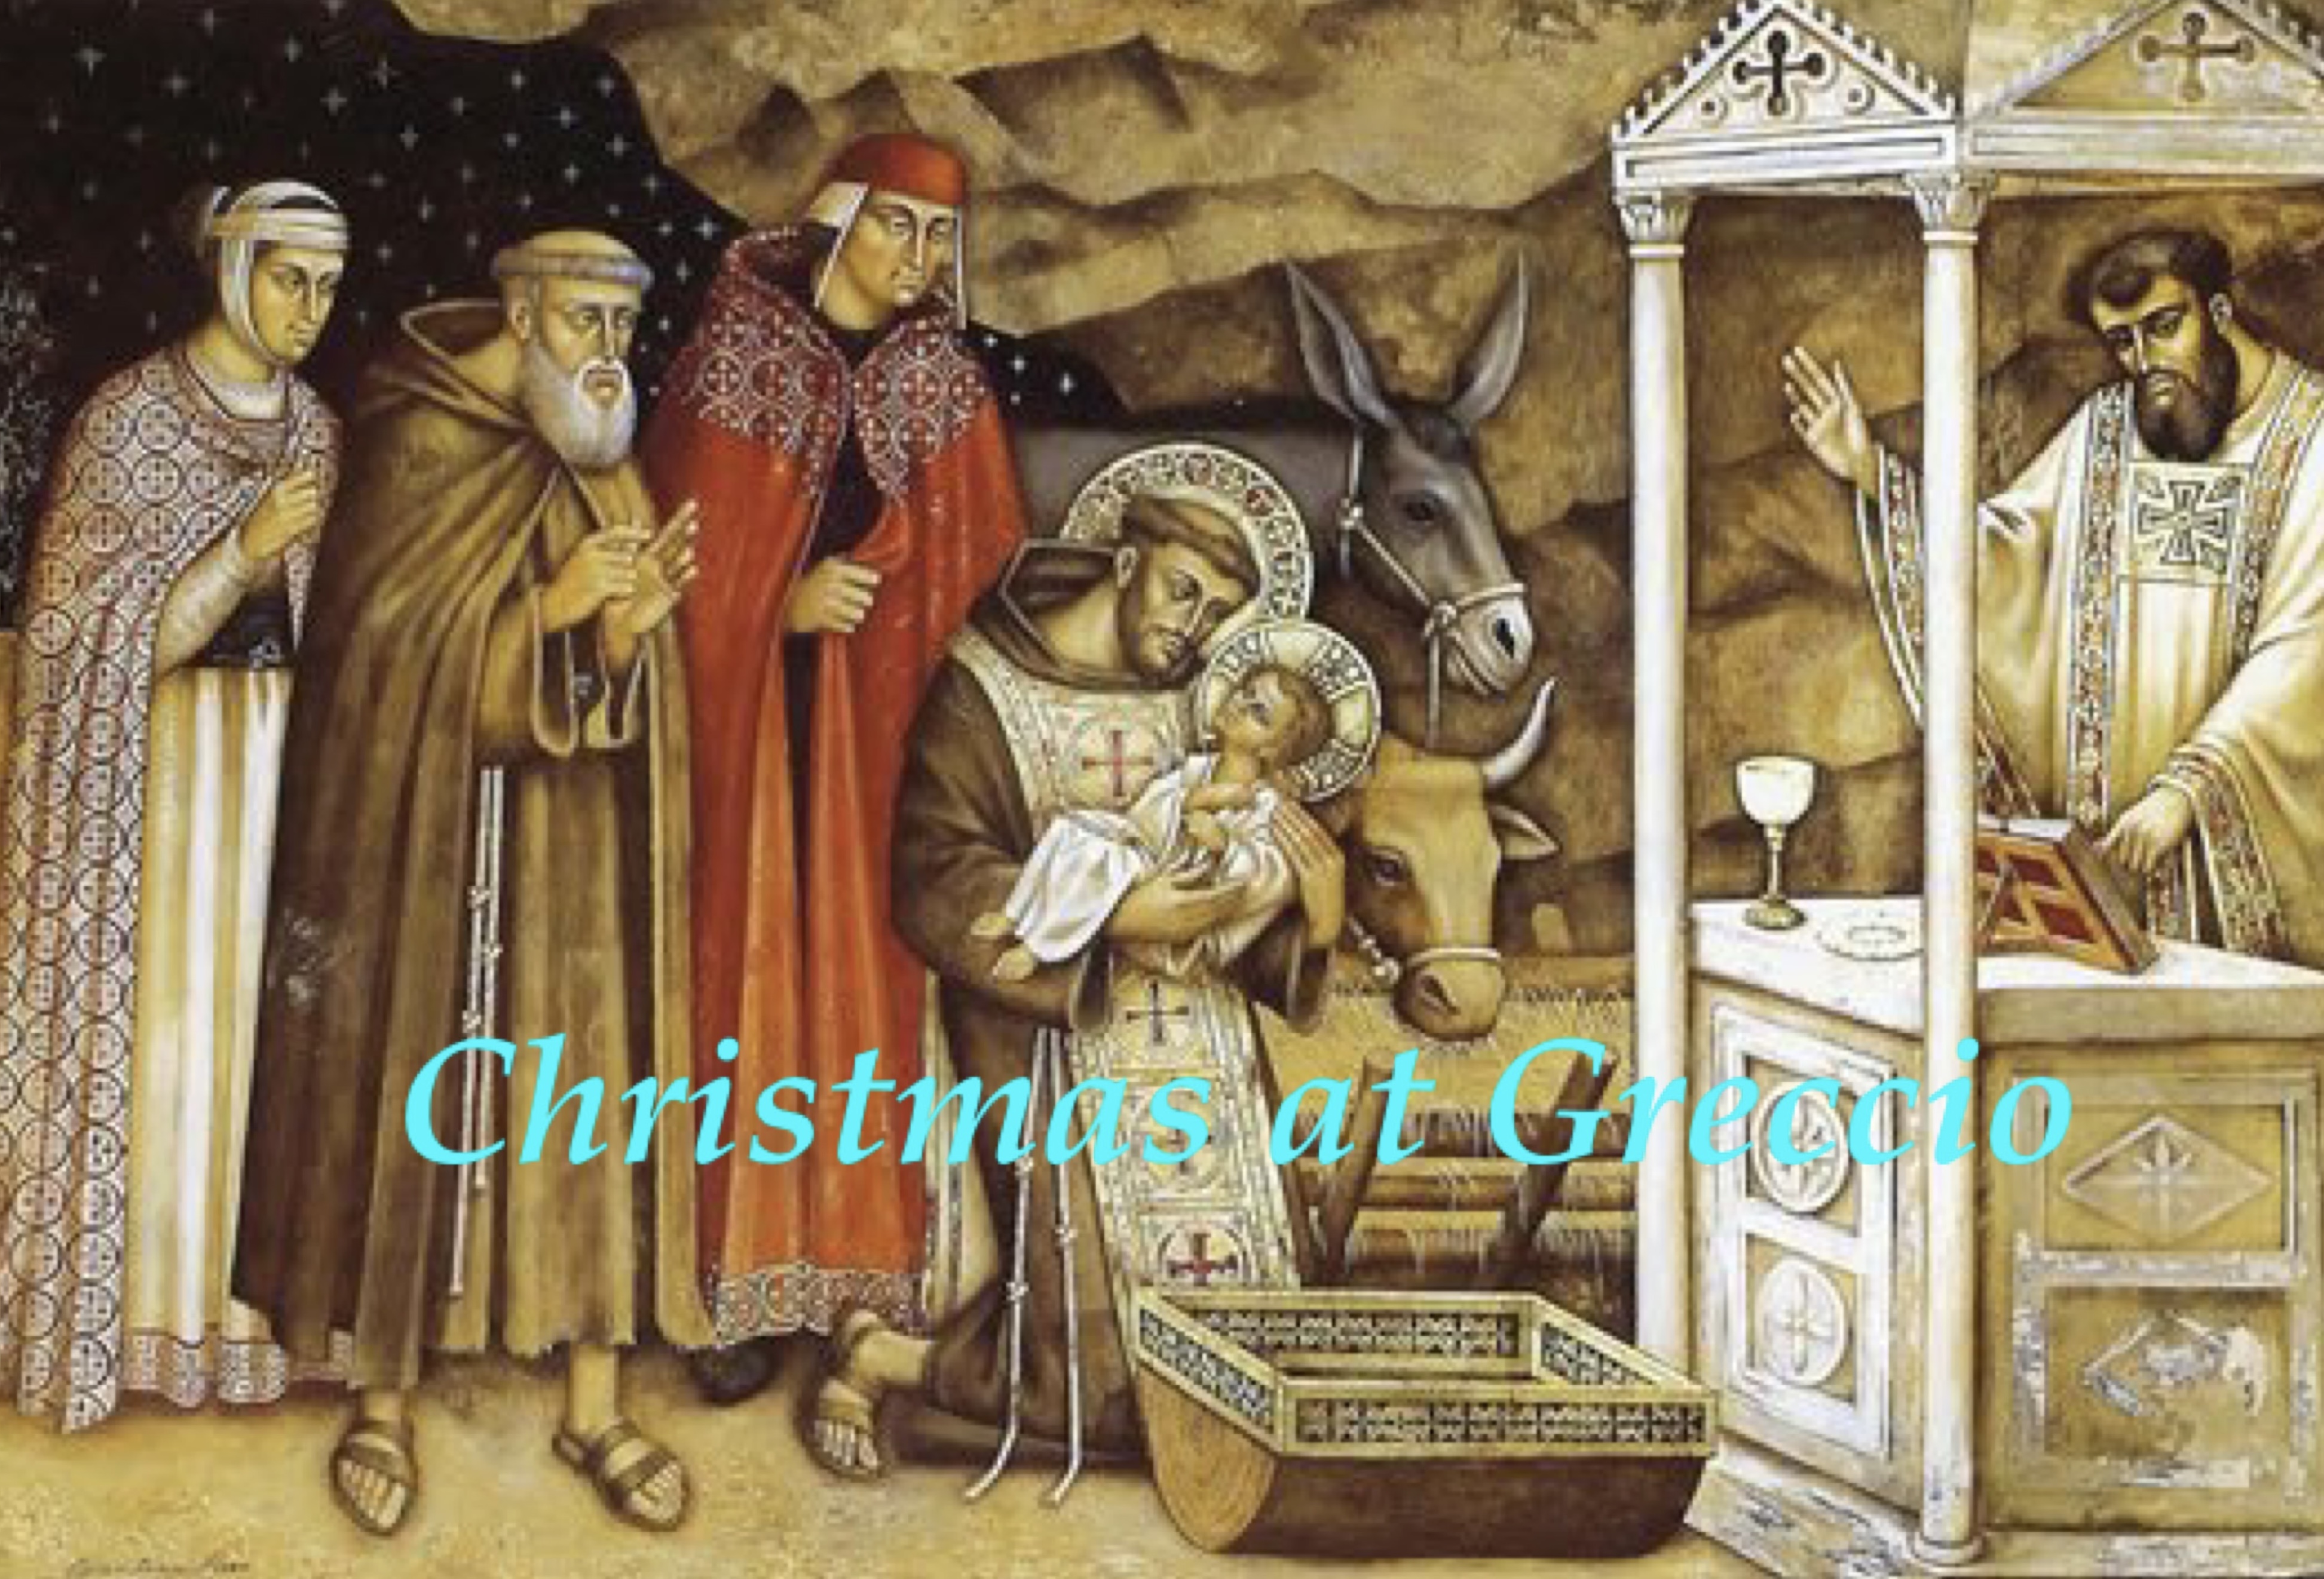 24th December - Christmas at Greccio